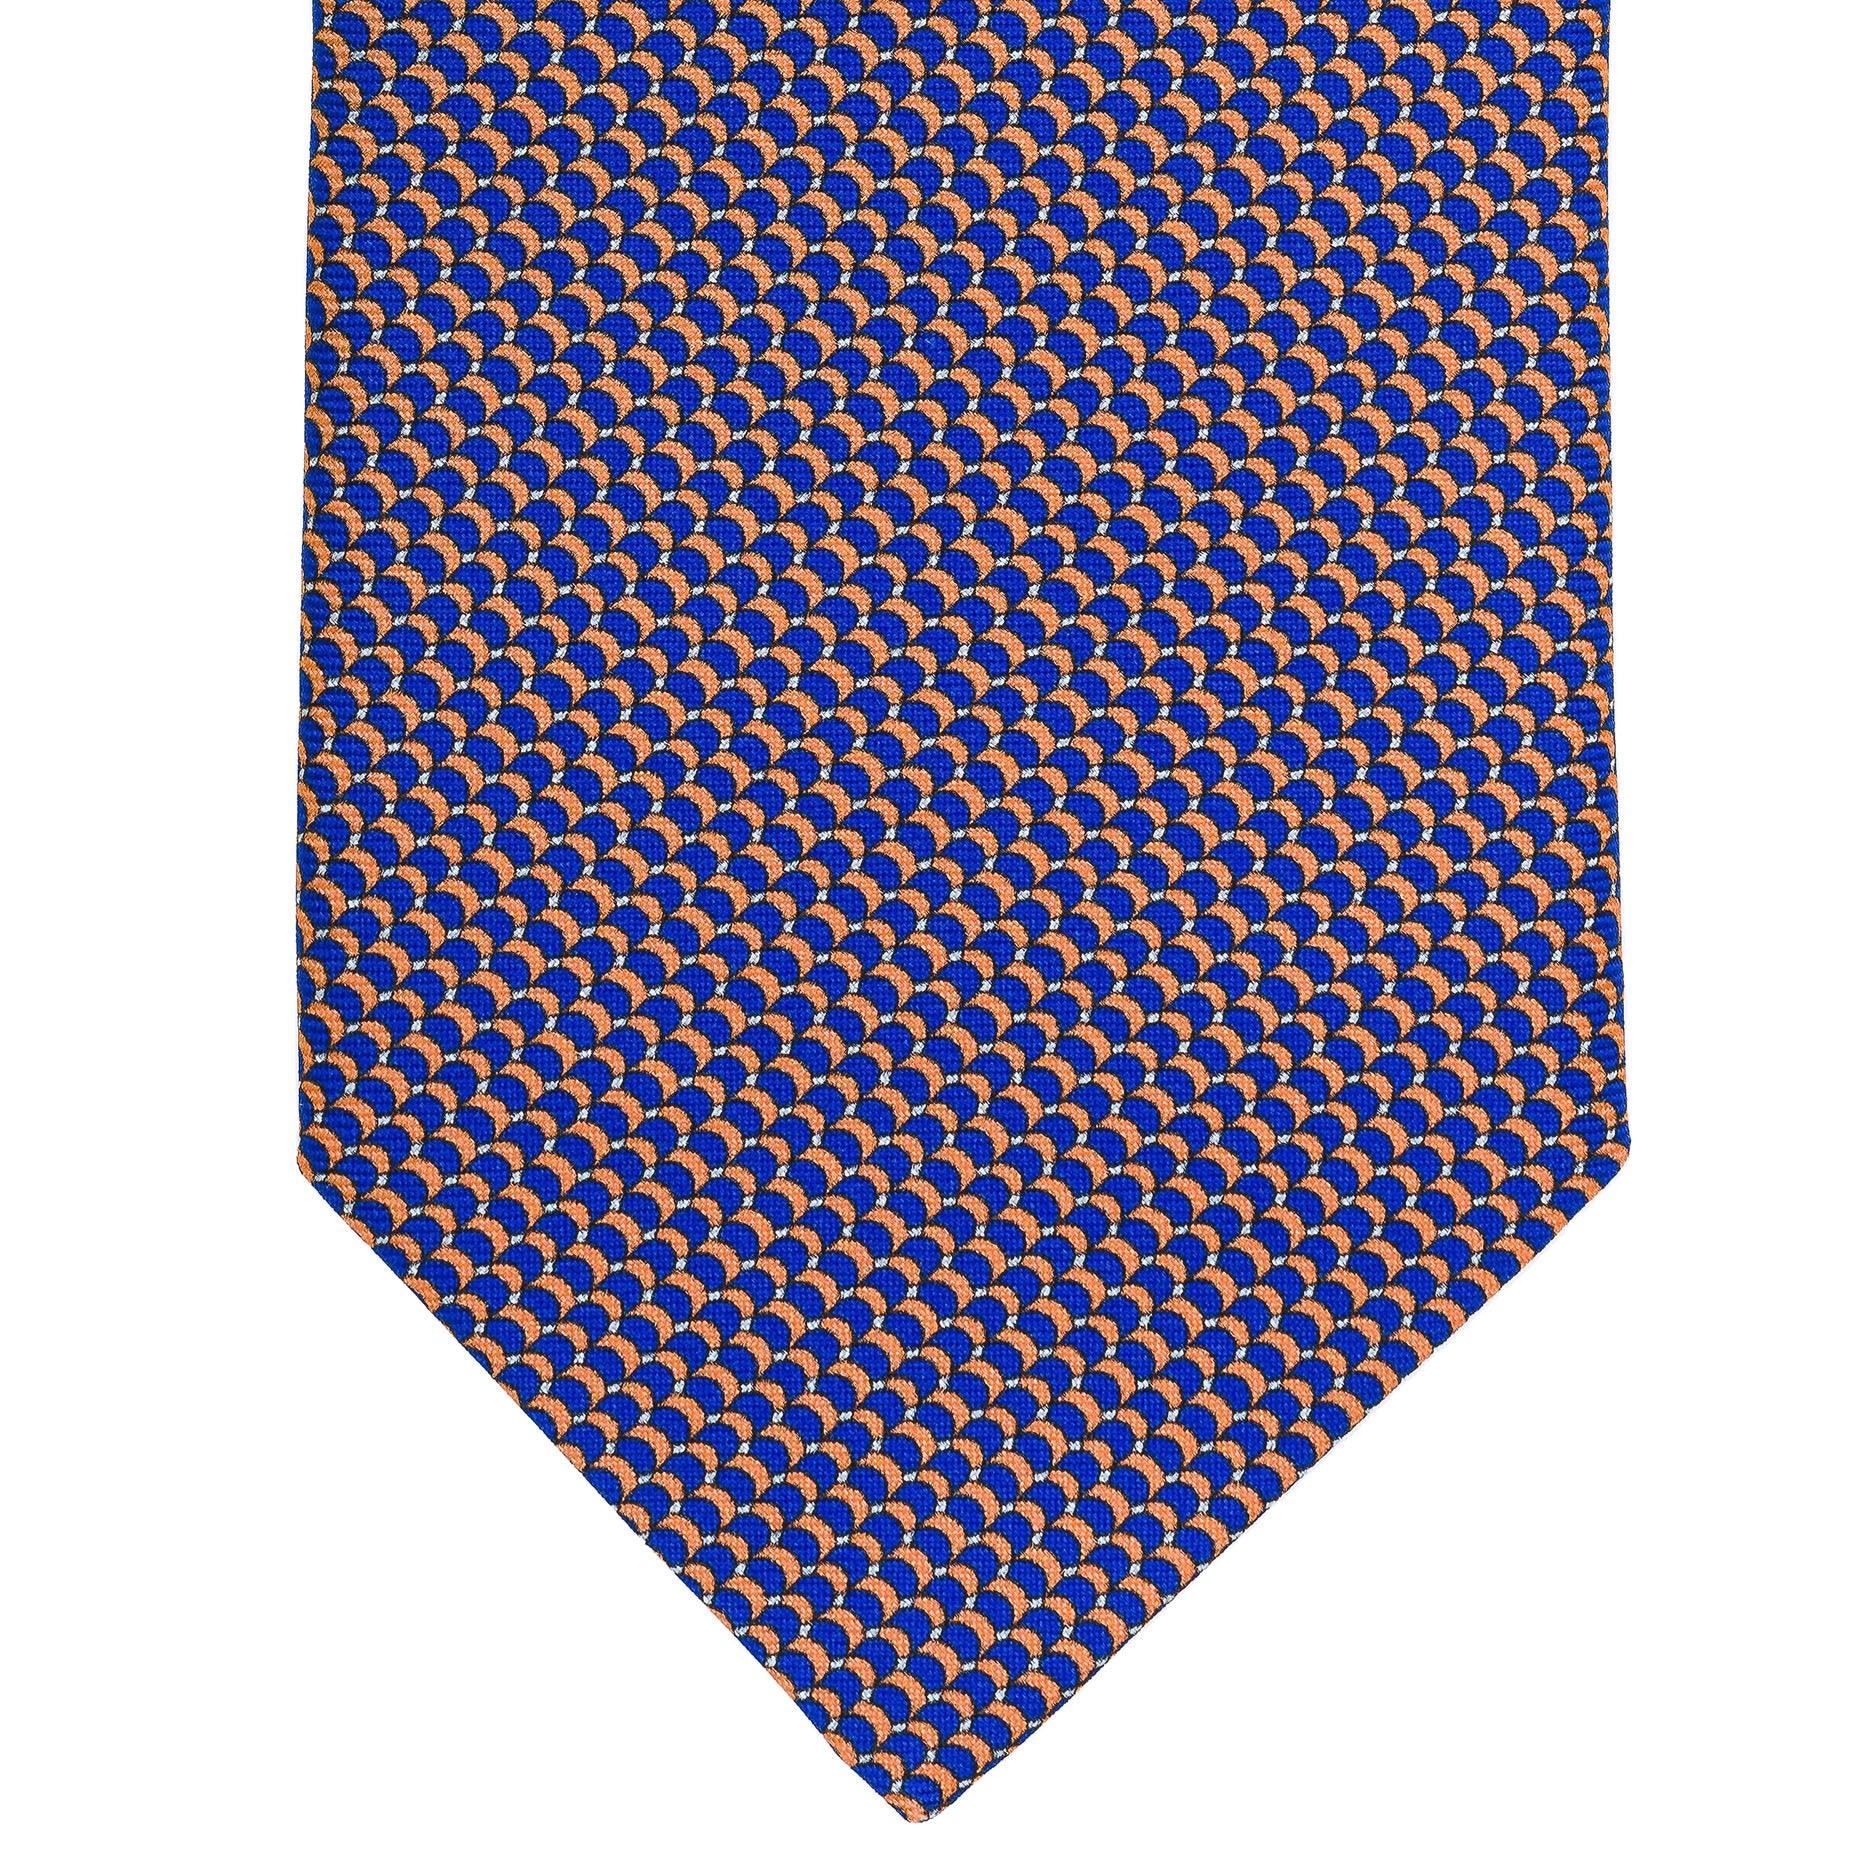 Cravatta 3 pieghe - TAL S2 - Talarico Cravatte